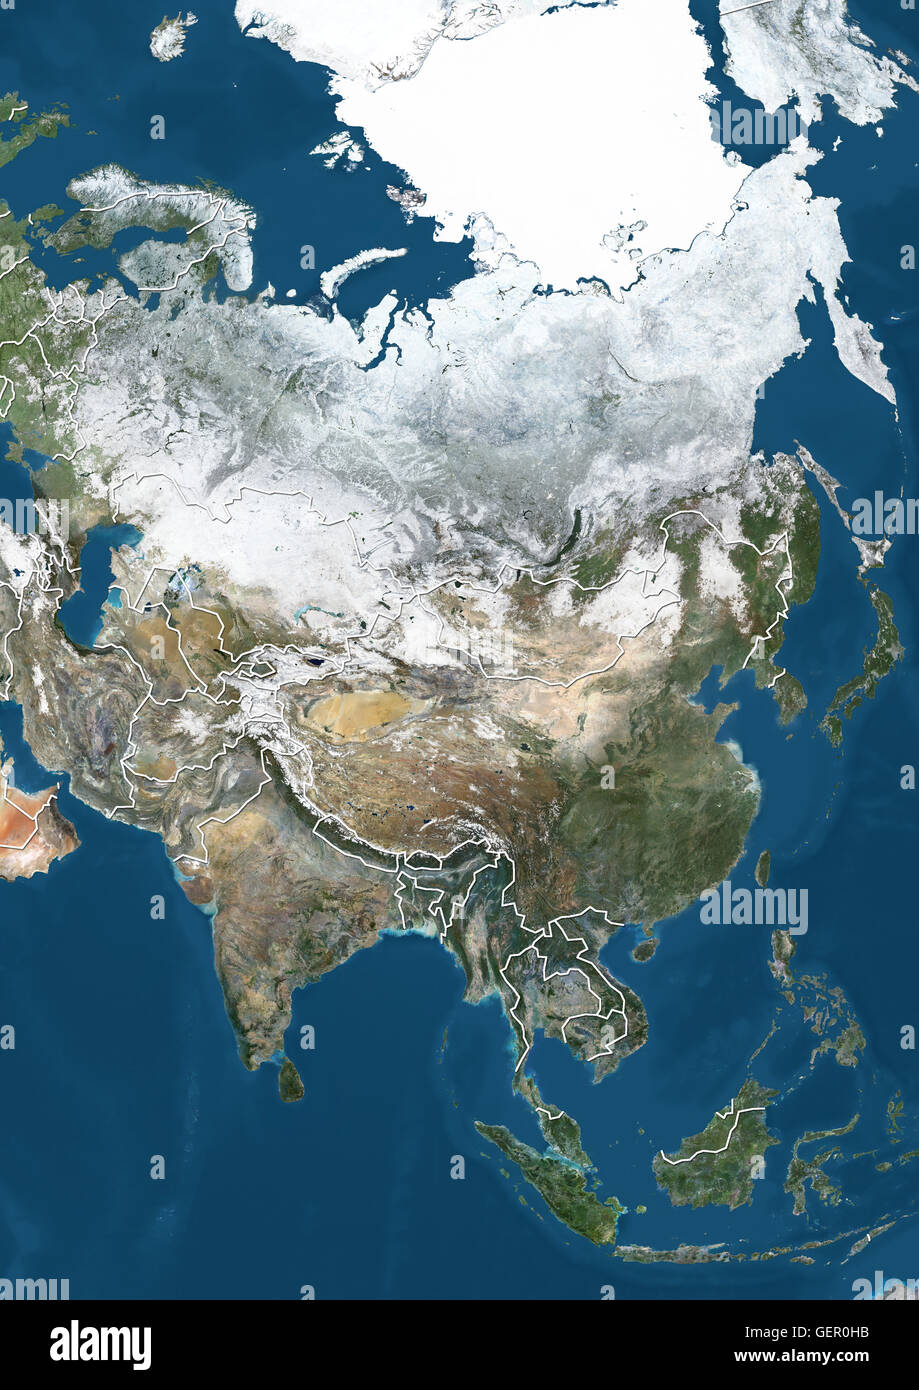 Satellitenbild von Asien im Winter, mit teilweise Schneedecke und arktische Eiskappe (mit Ländergrenzen). Dieses Bild wurde aus Daten von Satelliten Landsat 7 & 8 zusammengestellt. Stockfoto